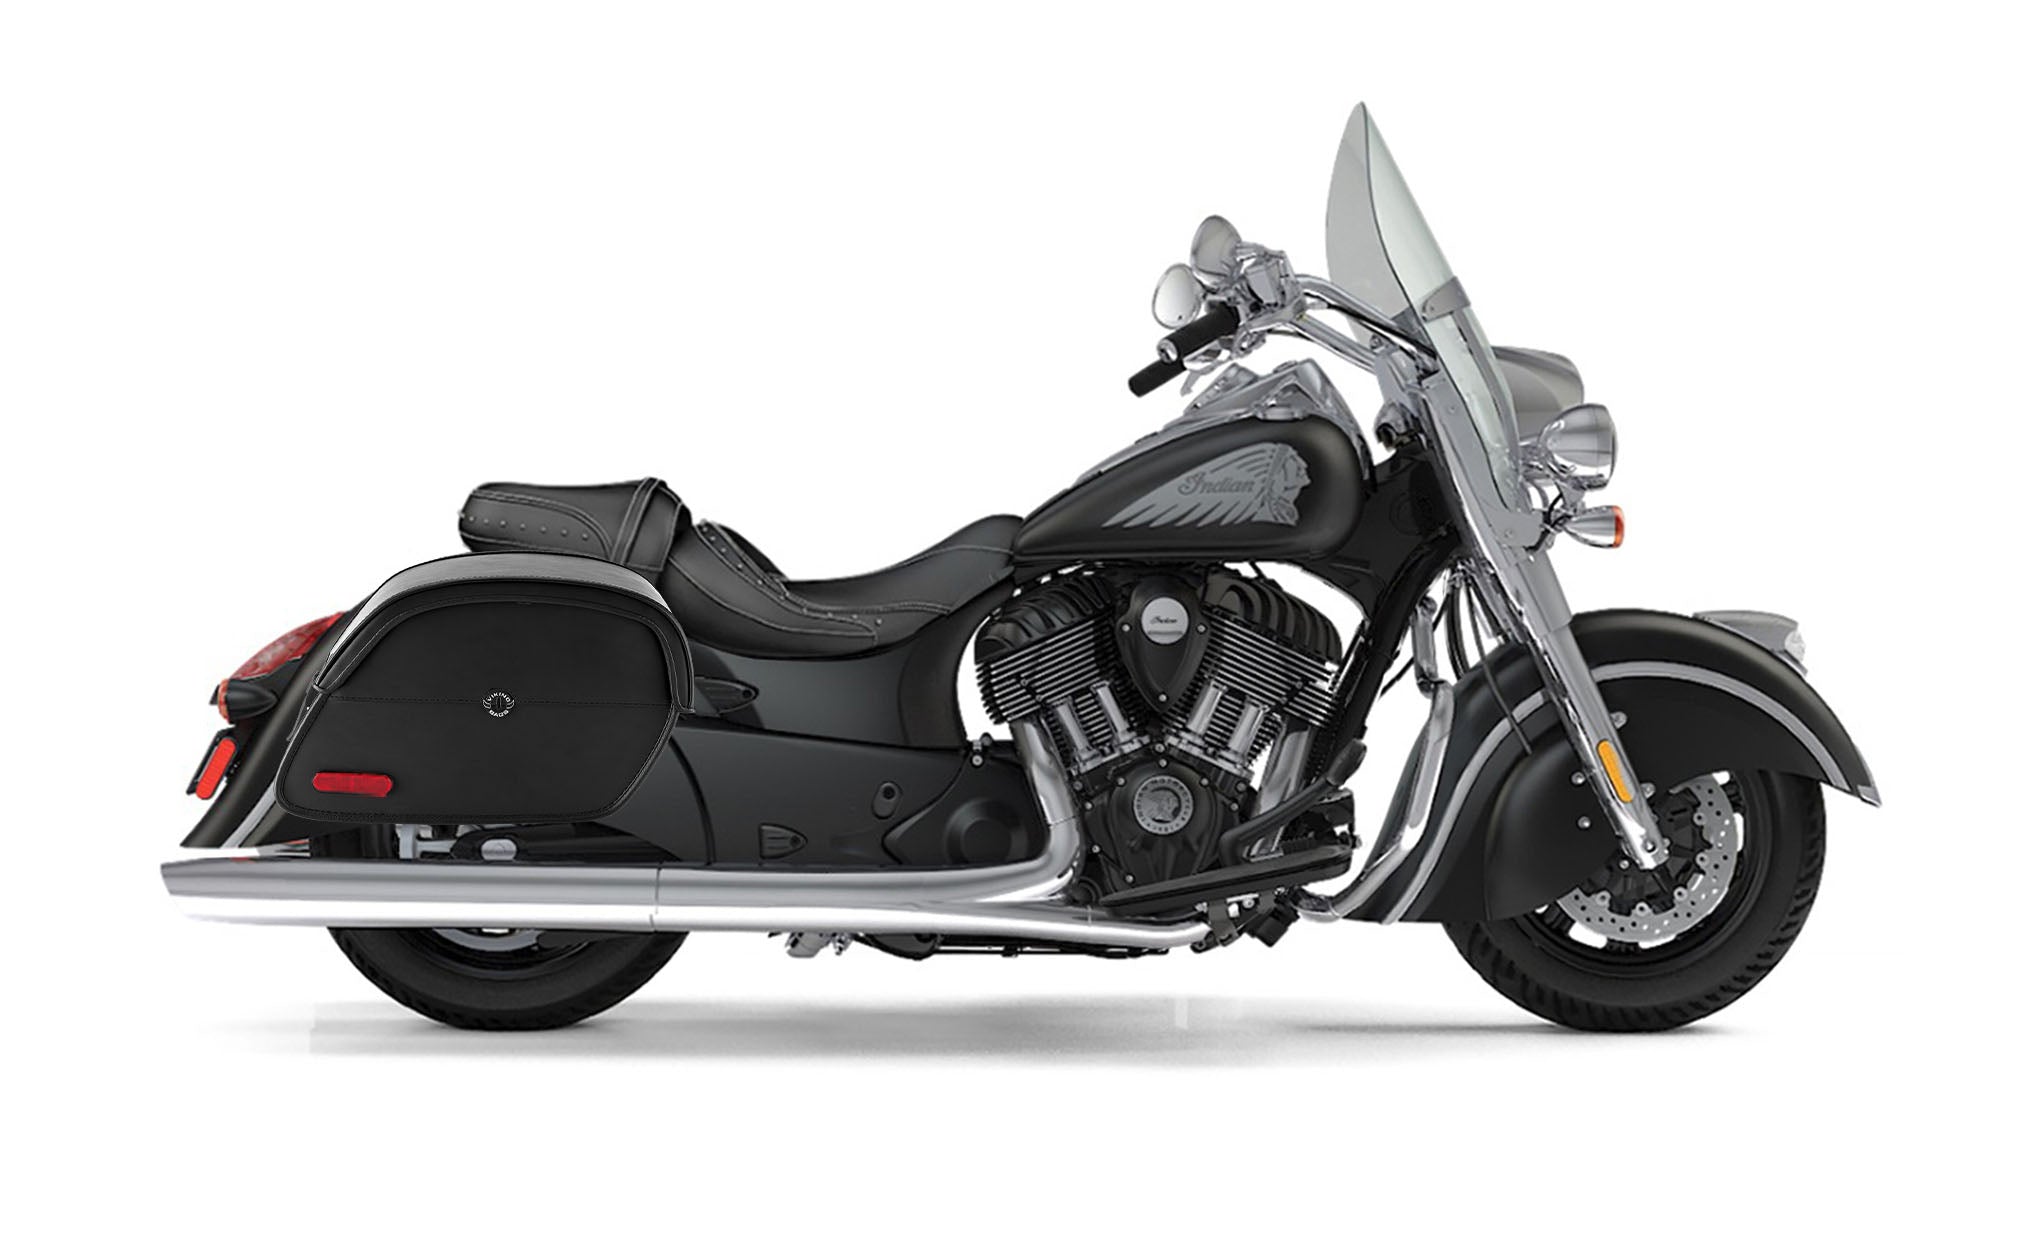 Viking California Large Indian Springfield Leather Motorcycle Saddlebags on Bike Photo @expand